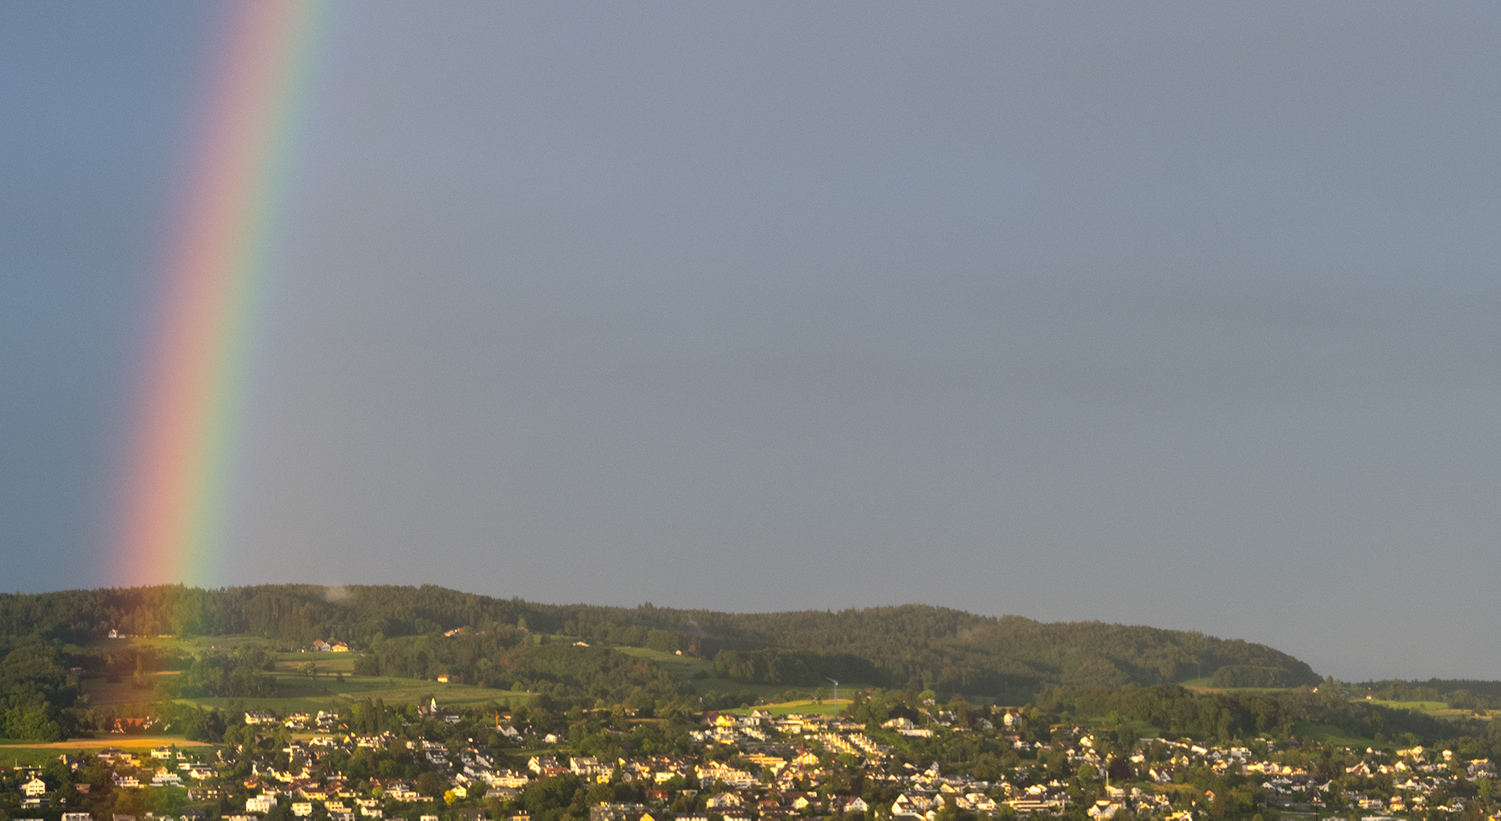 Fotografie eines Regenbogens bei Regenwetter. Gut zu sehen ist der Farbverlauf im Spektrum des Regenbogens. Aufnahmeort: Region Zürichsee.